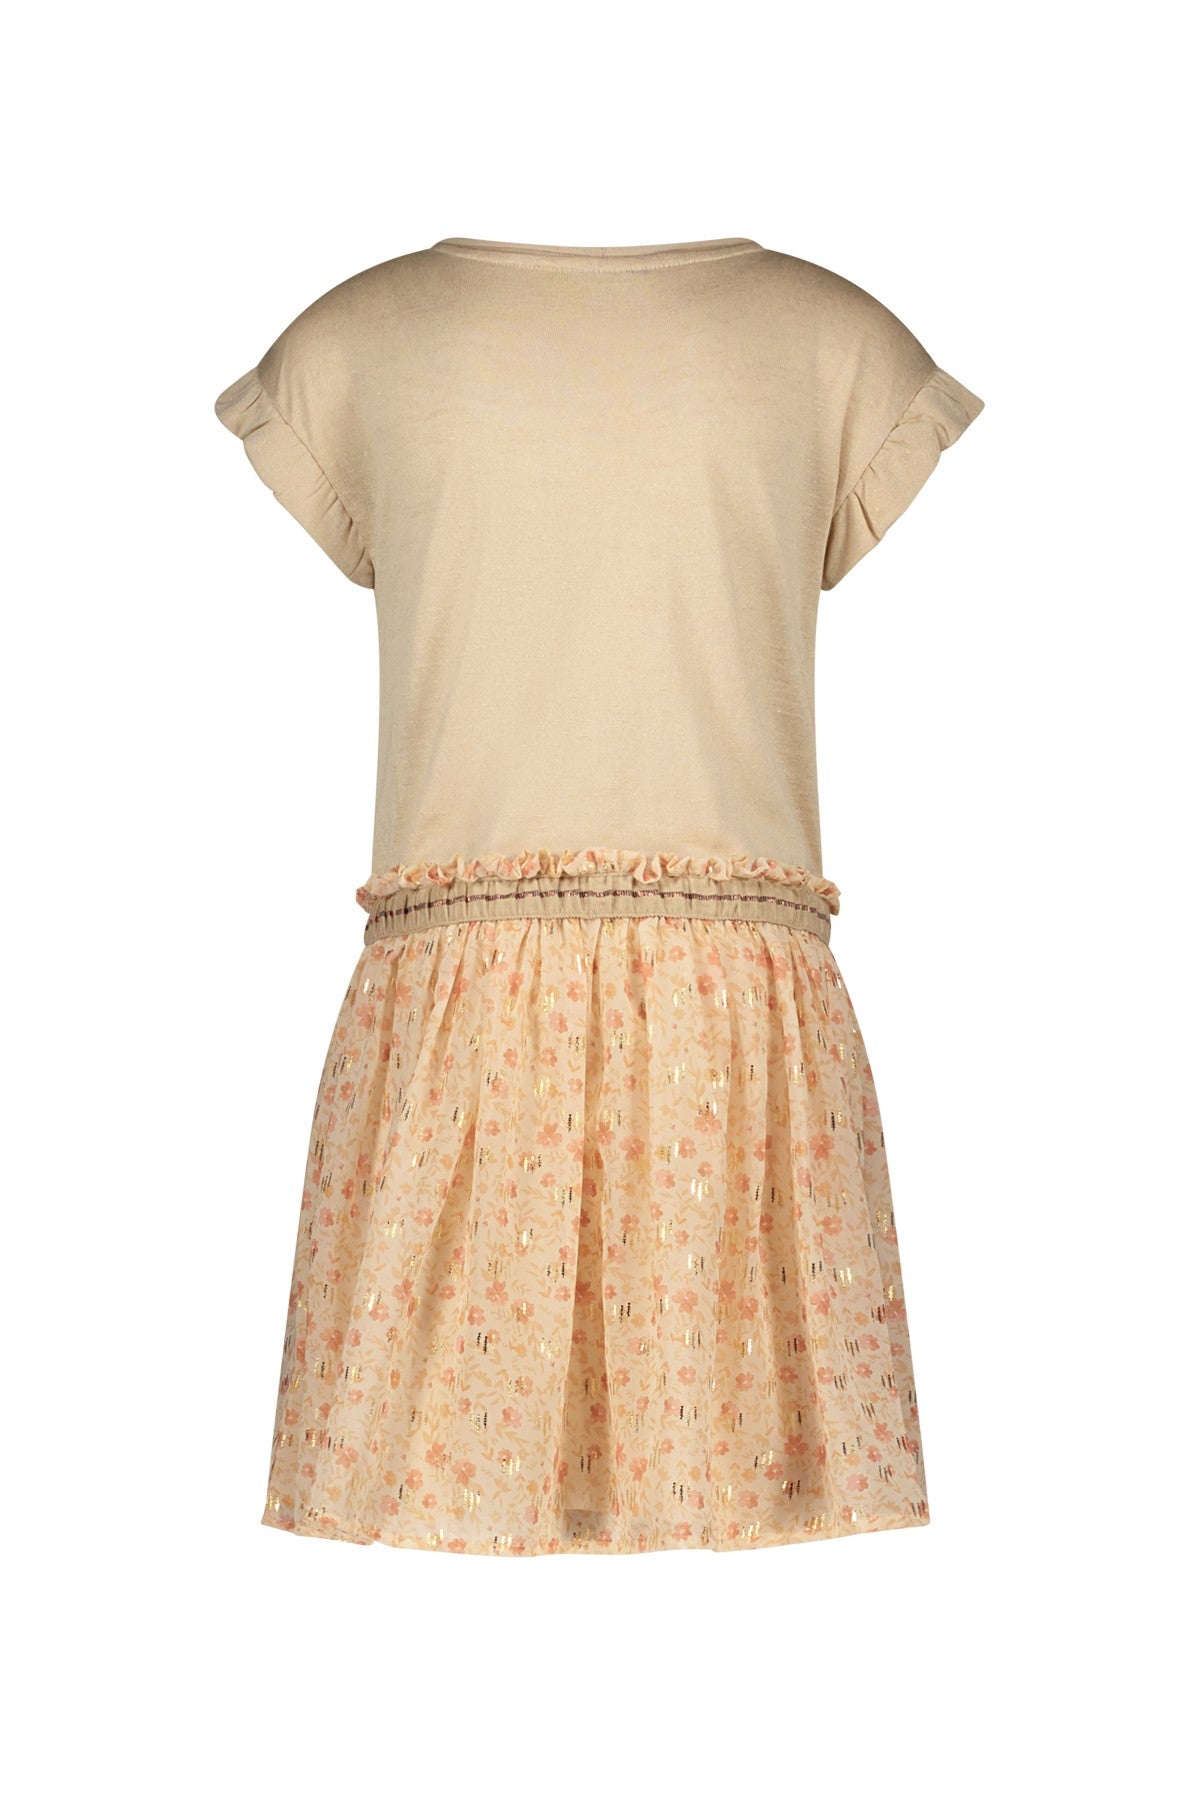 Meisjes Chiffon Flower Dress With Metallic Jersey Top van Like Flo in de kleur Flower in maat 140.